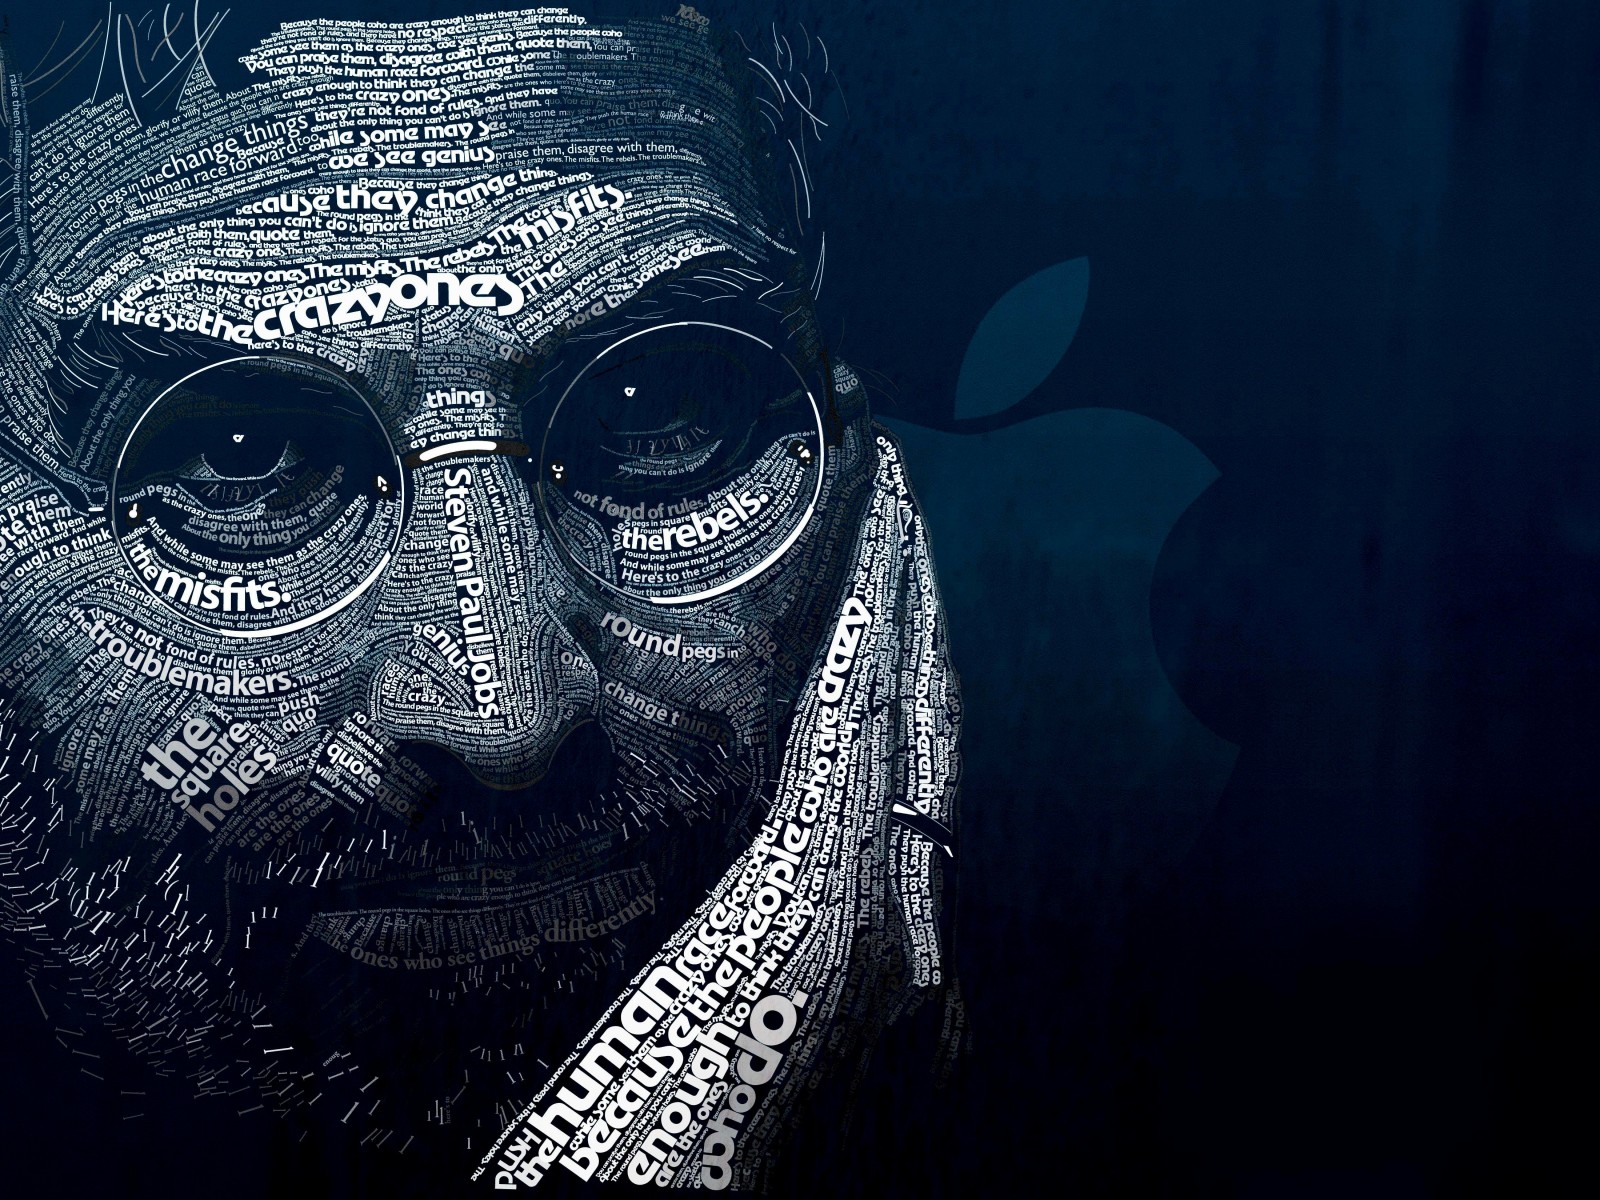 Steve Jobs Typographic Portrait Wallpaper for Desktop 1600x1200